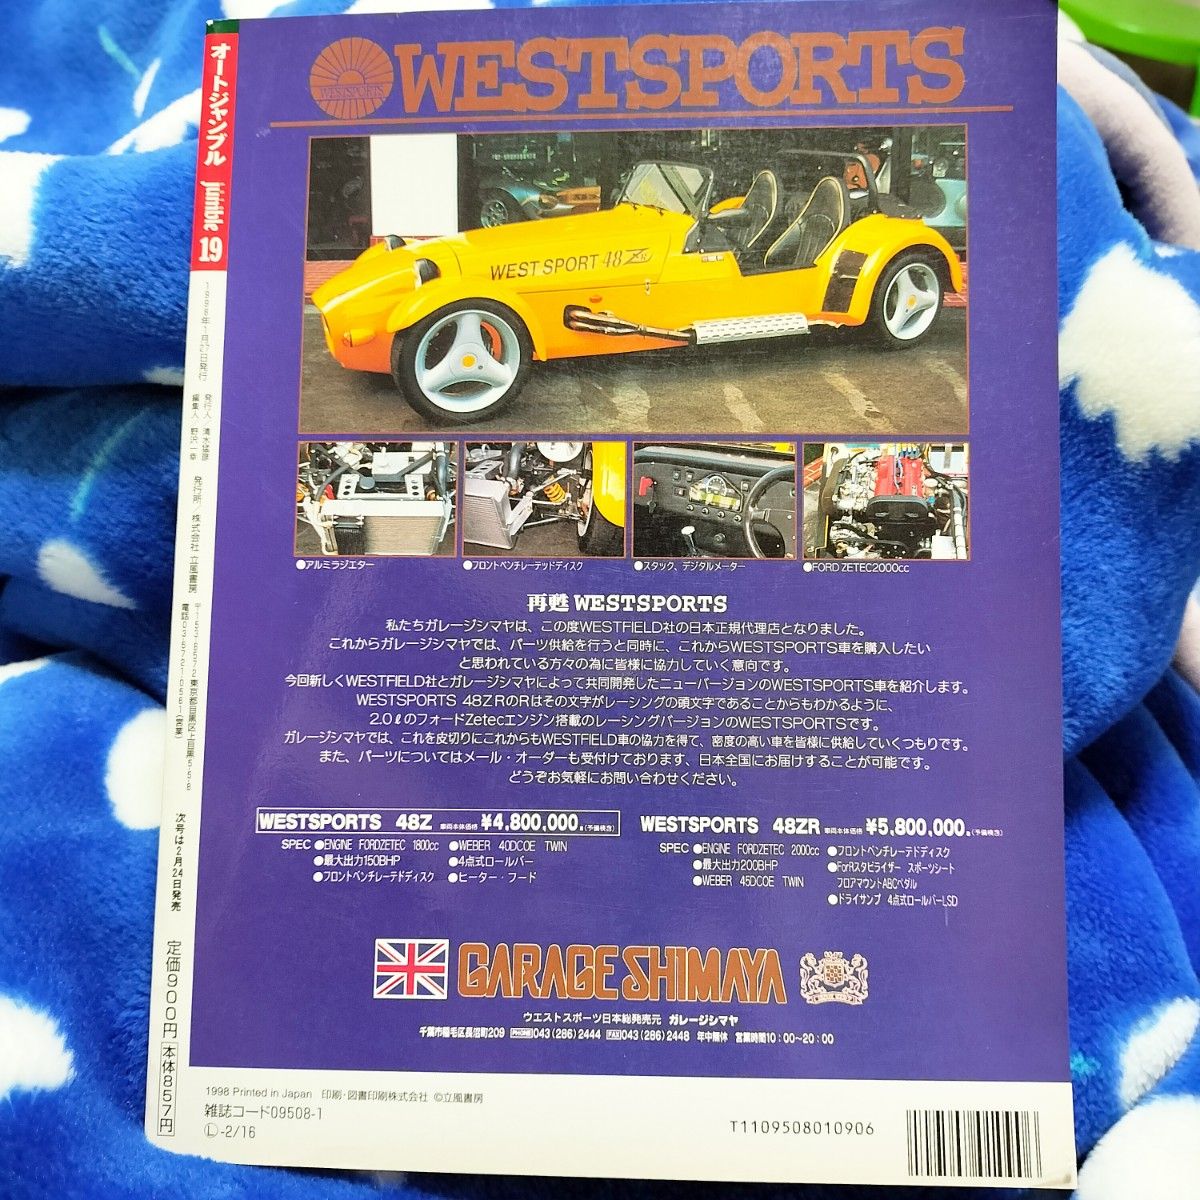 1998年1月号 AUTO JUMBLE オートジャンブル vol .19